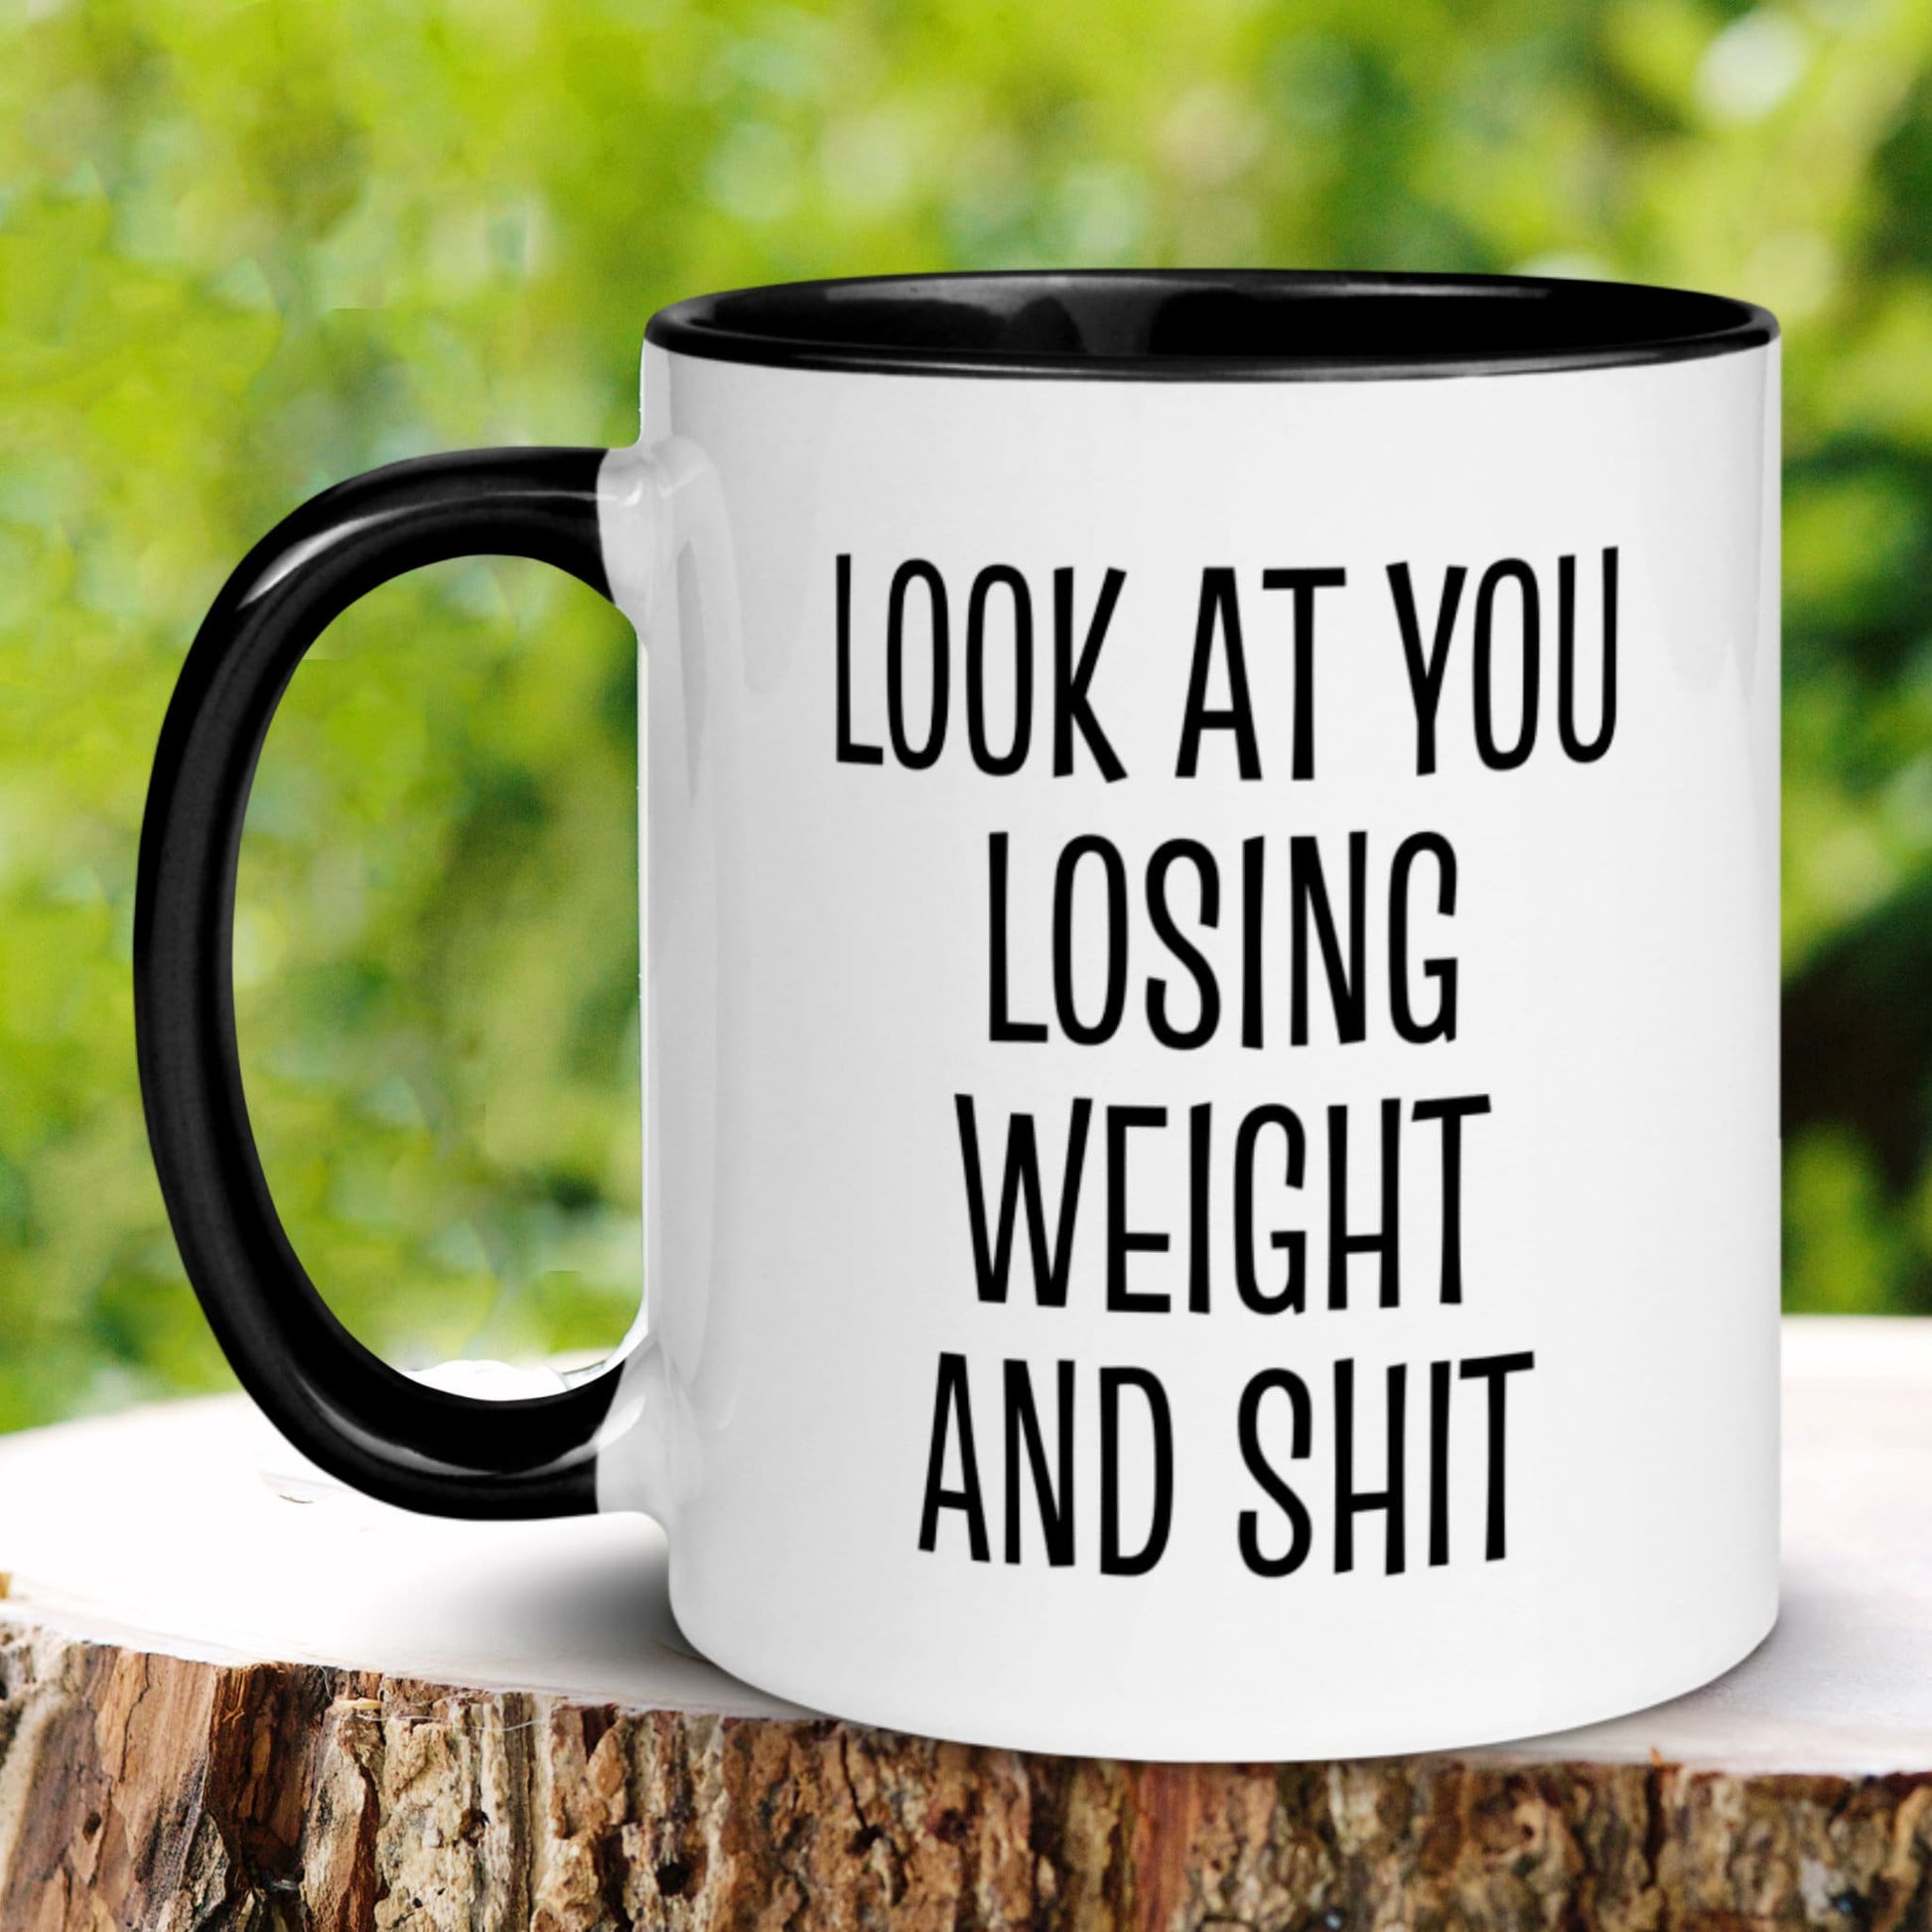 Weight Loss Mug, Look At You Losing Weight and Shit Mug - Zehnaria - FUNNY HUMOR - Mugs